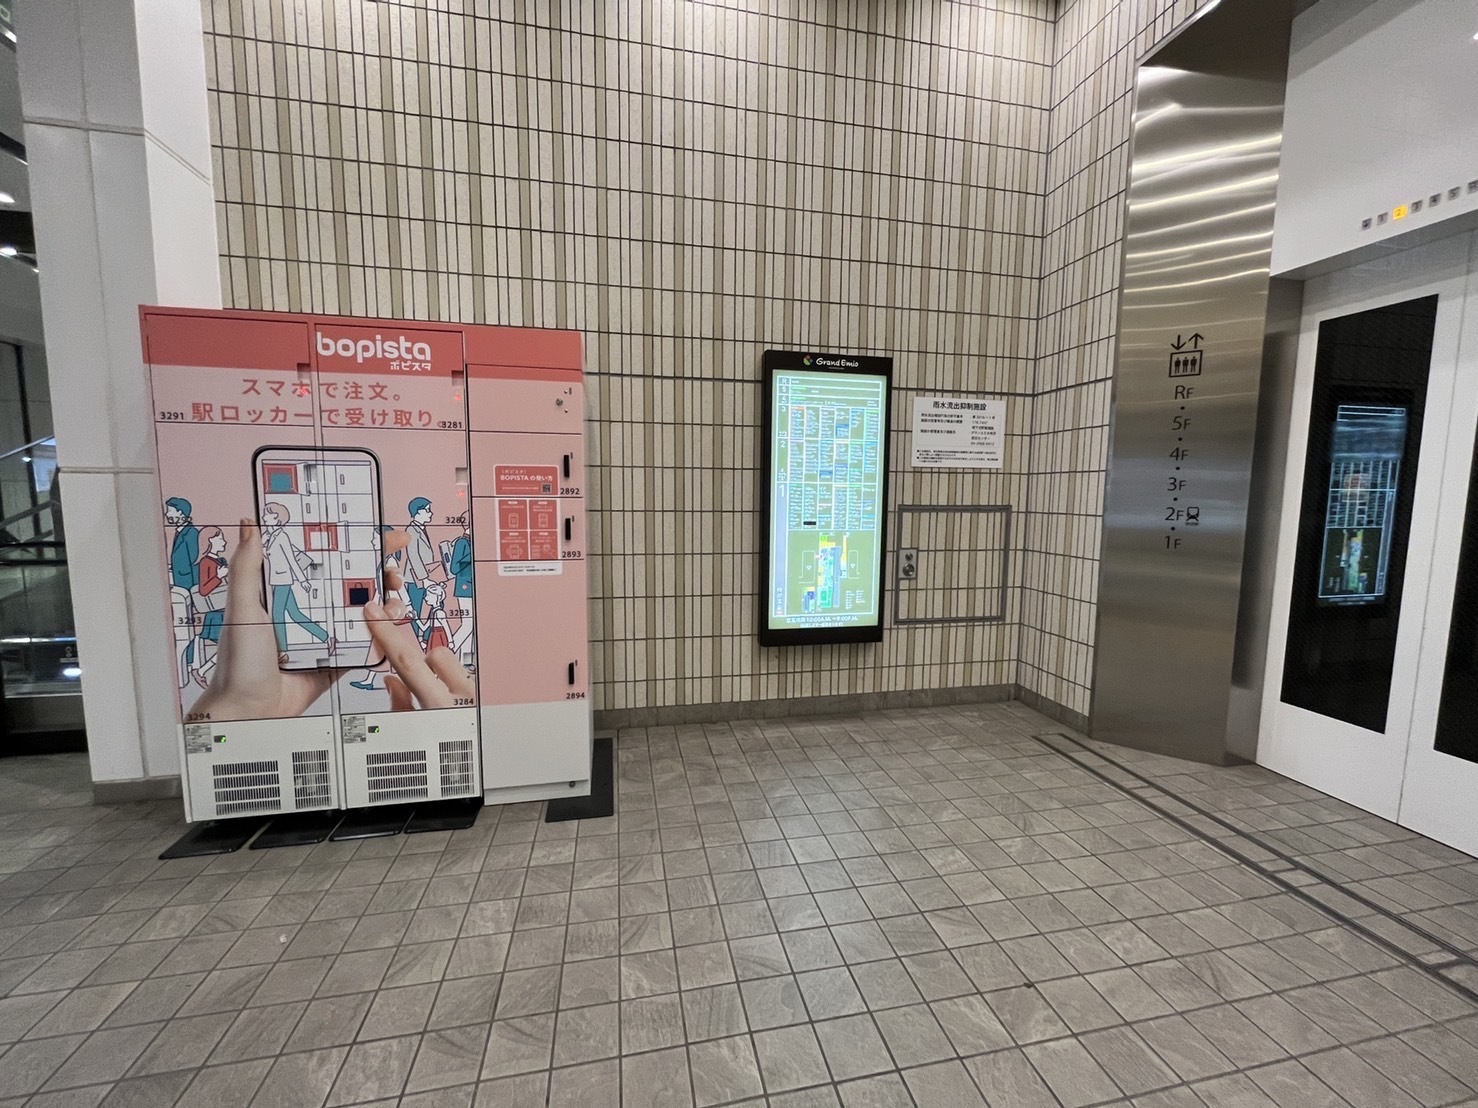 グランエミオ1F(所沢駅東口エスカレーター付近)